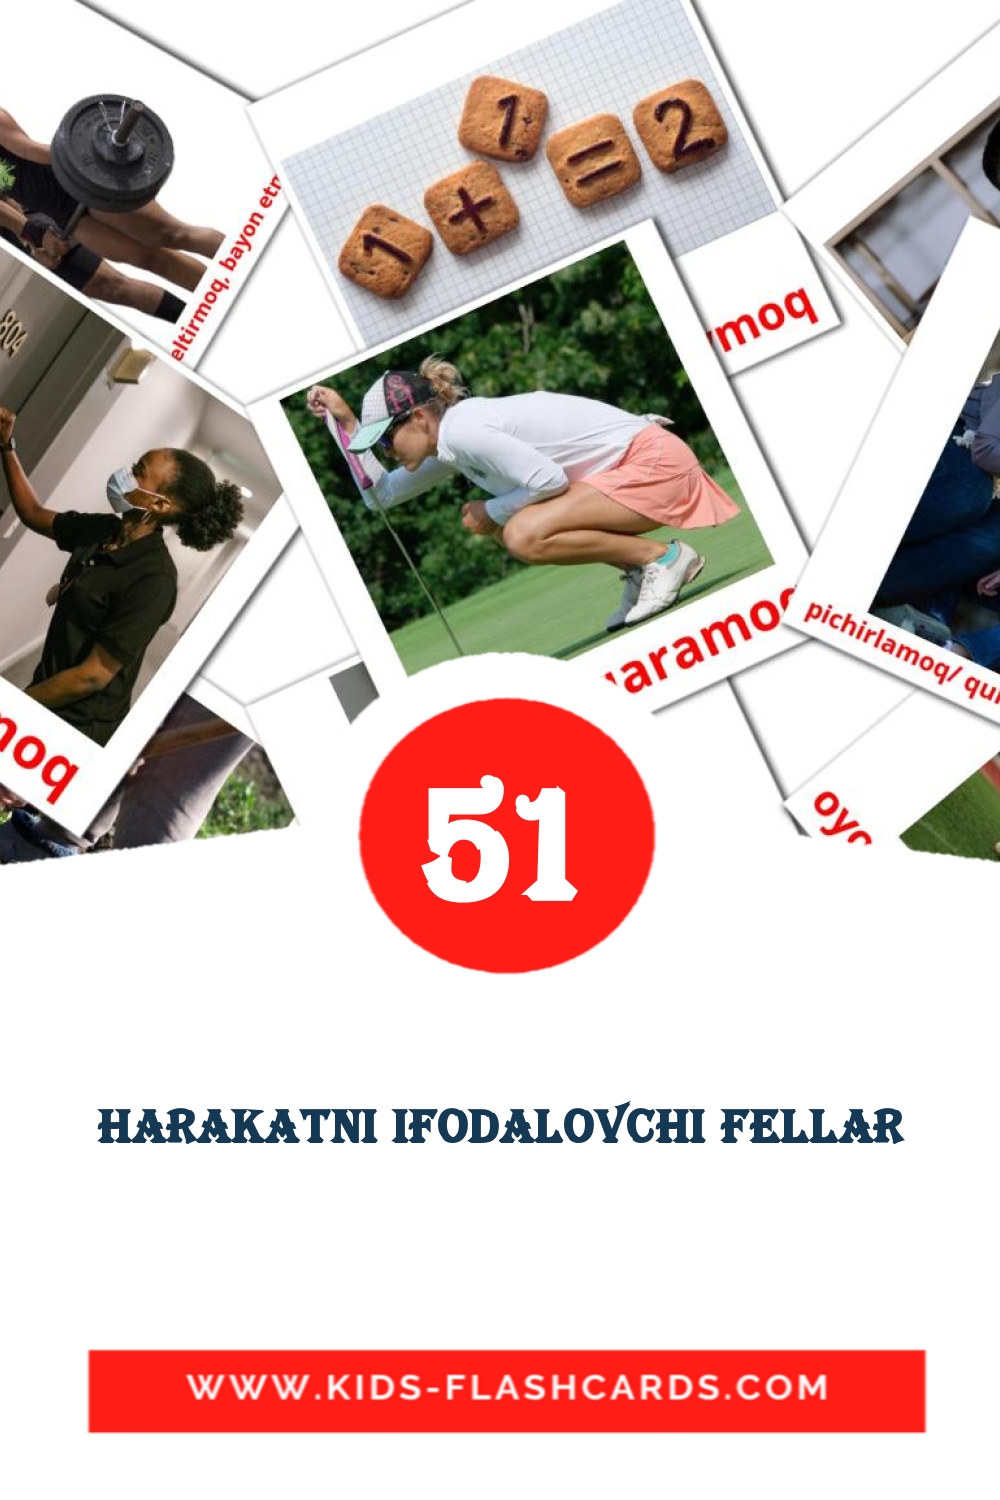 51 Harakatni ifodalovchi fellar fotokaarten voor kleuters in het uzbeekse